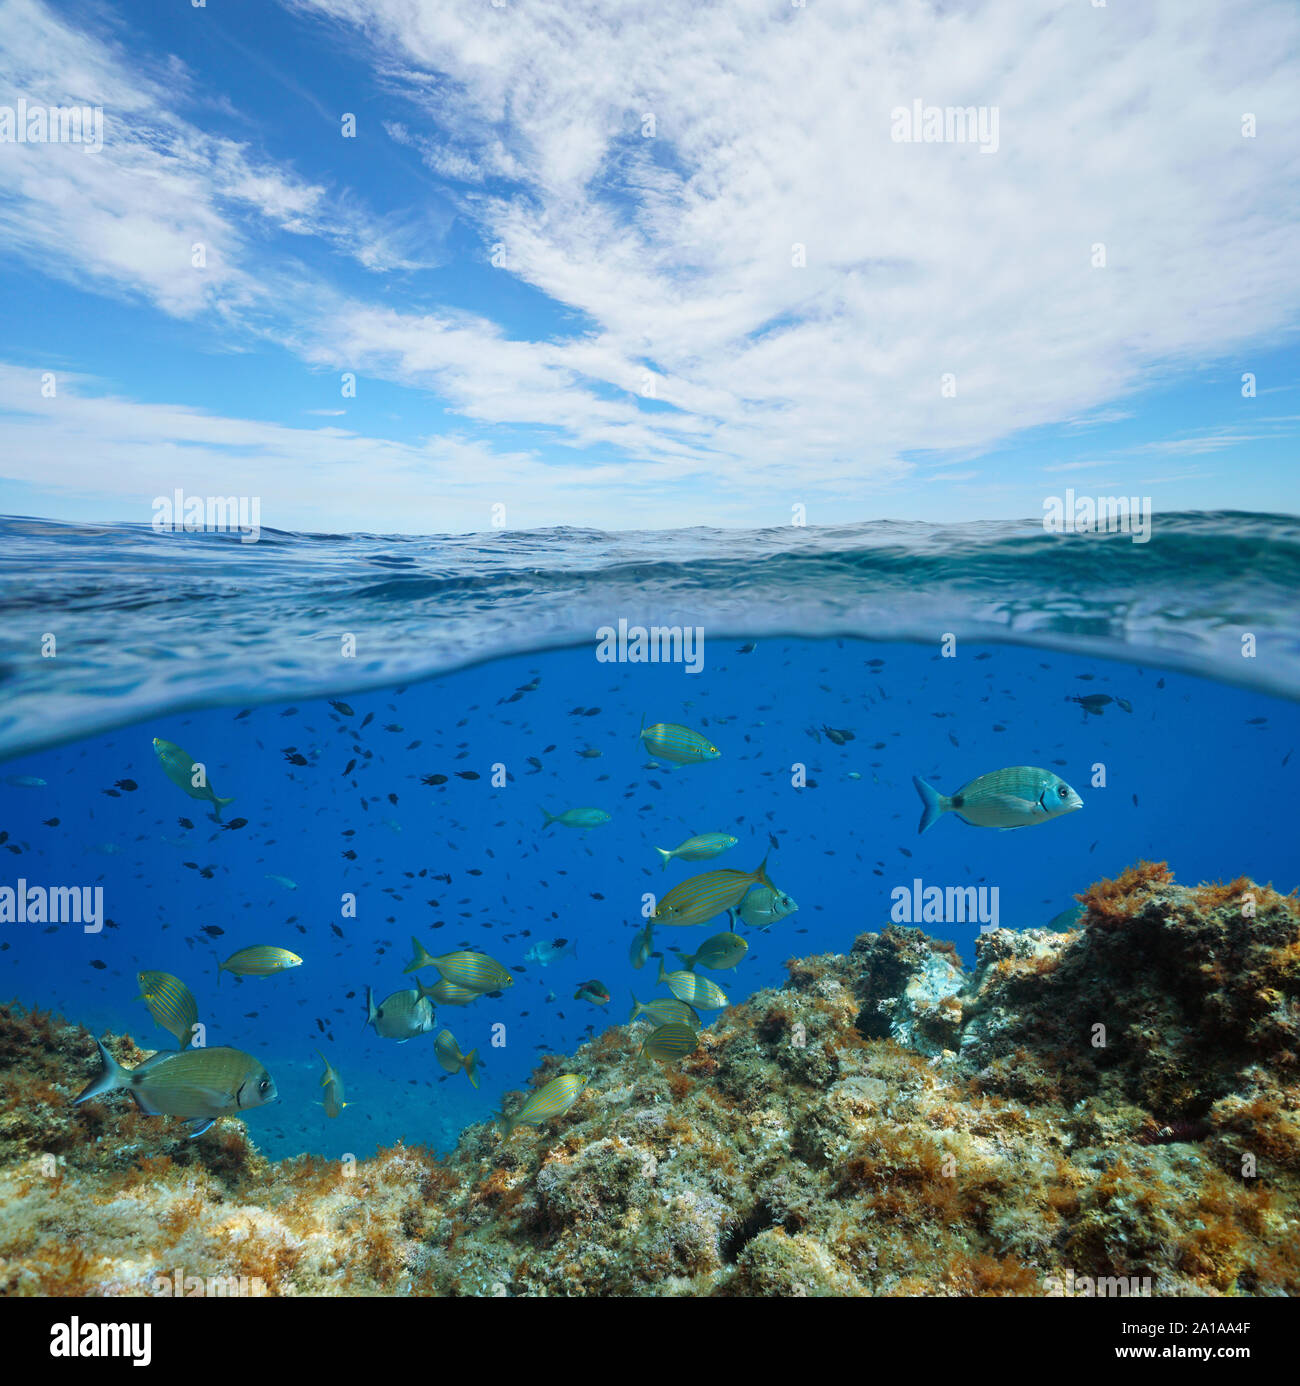 Marins de Méditerranée, de nombreux poissons sous l'eau et ciel bleu avec des nuages, vue fractionnée sur et sous la surface de l'eau, la France, l'Occitanie Banque D'Images